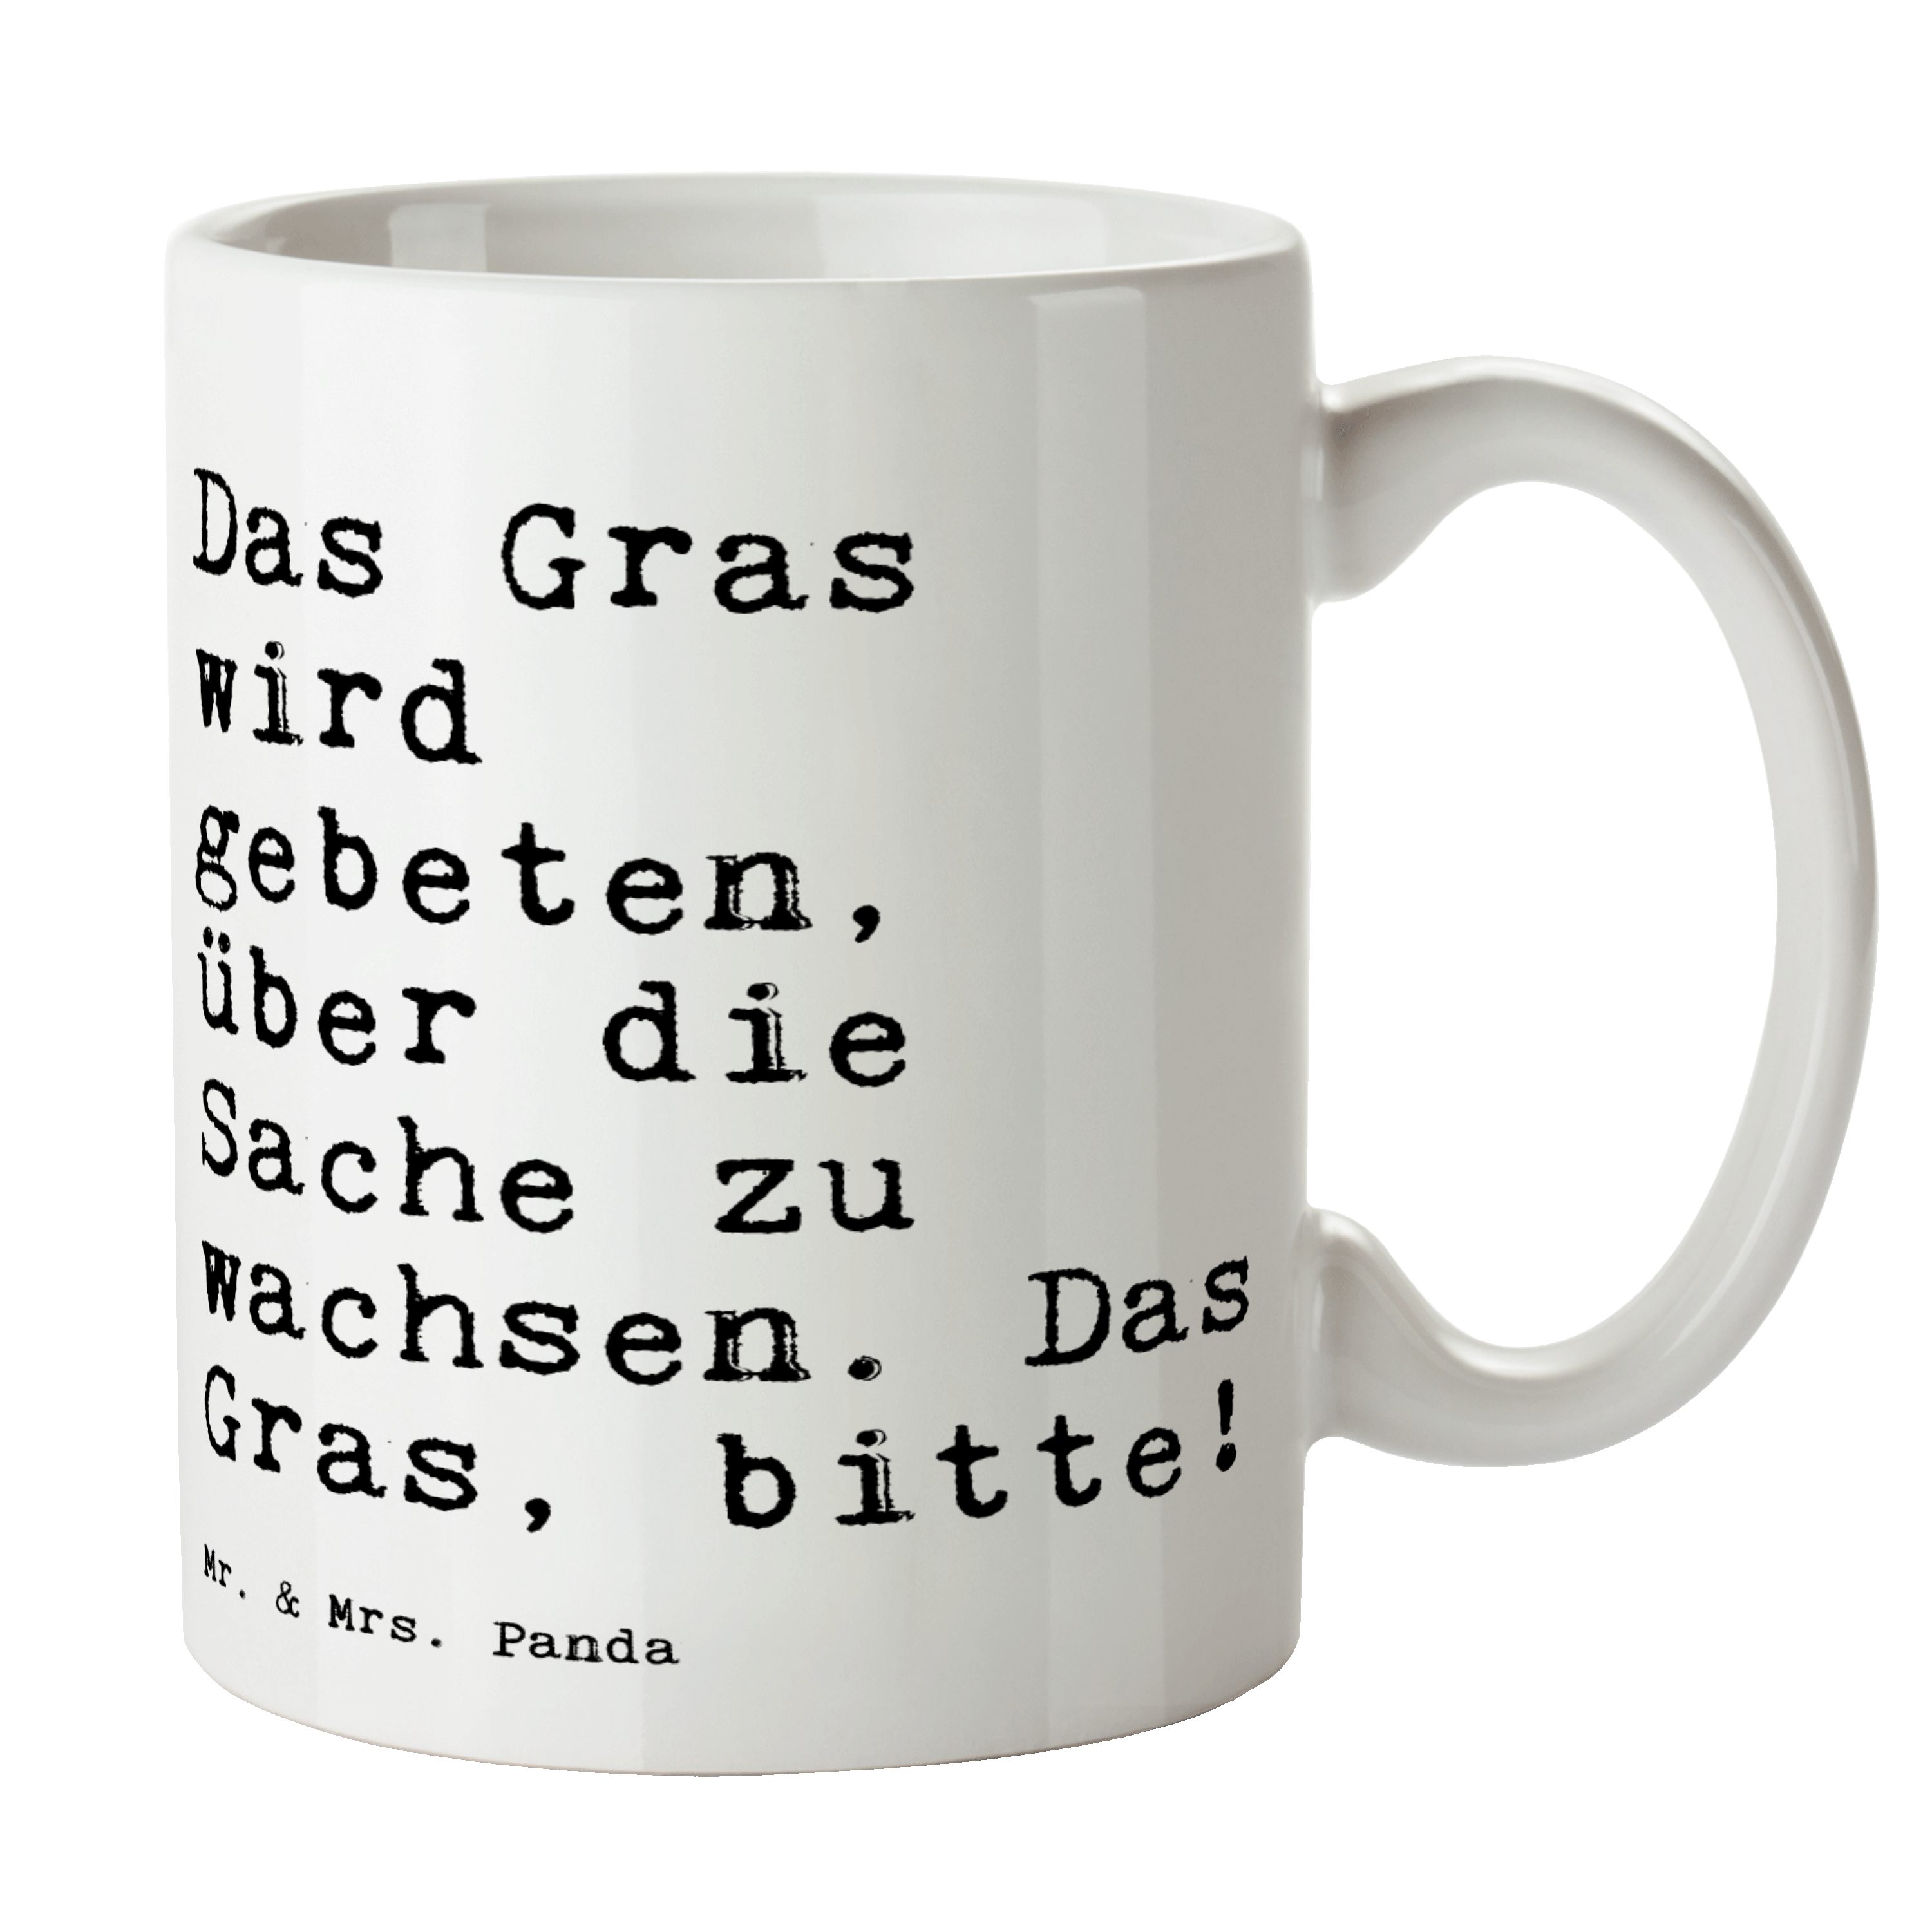 Trostpflaster, Geschenk, Gras Keramik & - Weiß Panda Mrs. Das Tasse Mr. - Keramikta, wird gebeten,...